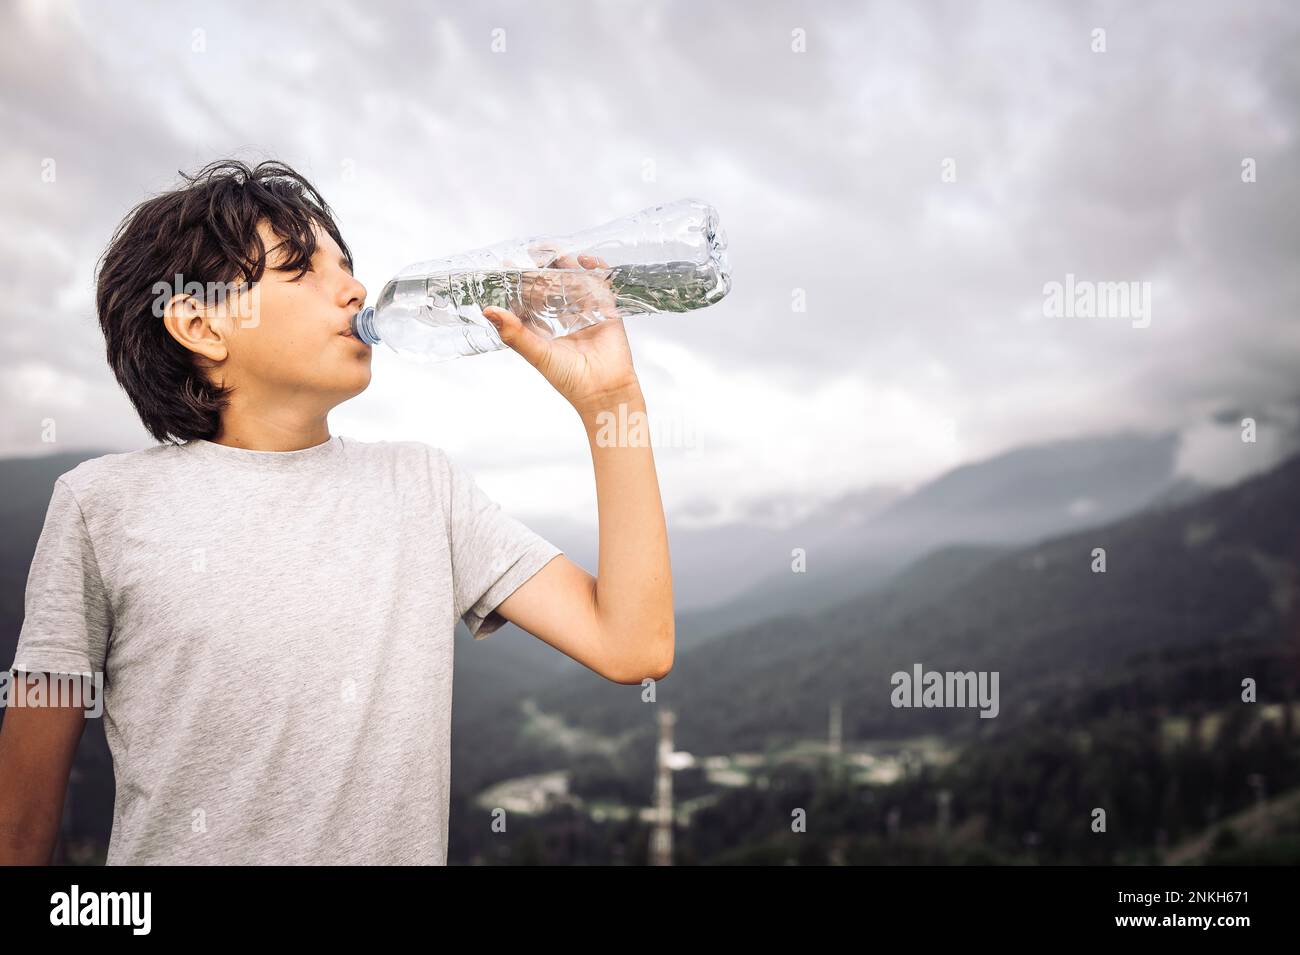 Un garçon assoiffé boit de l'eau de la bouteille Banque D'Images